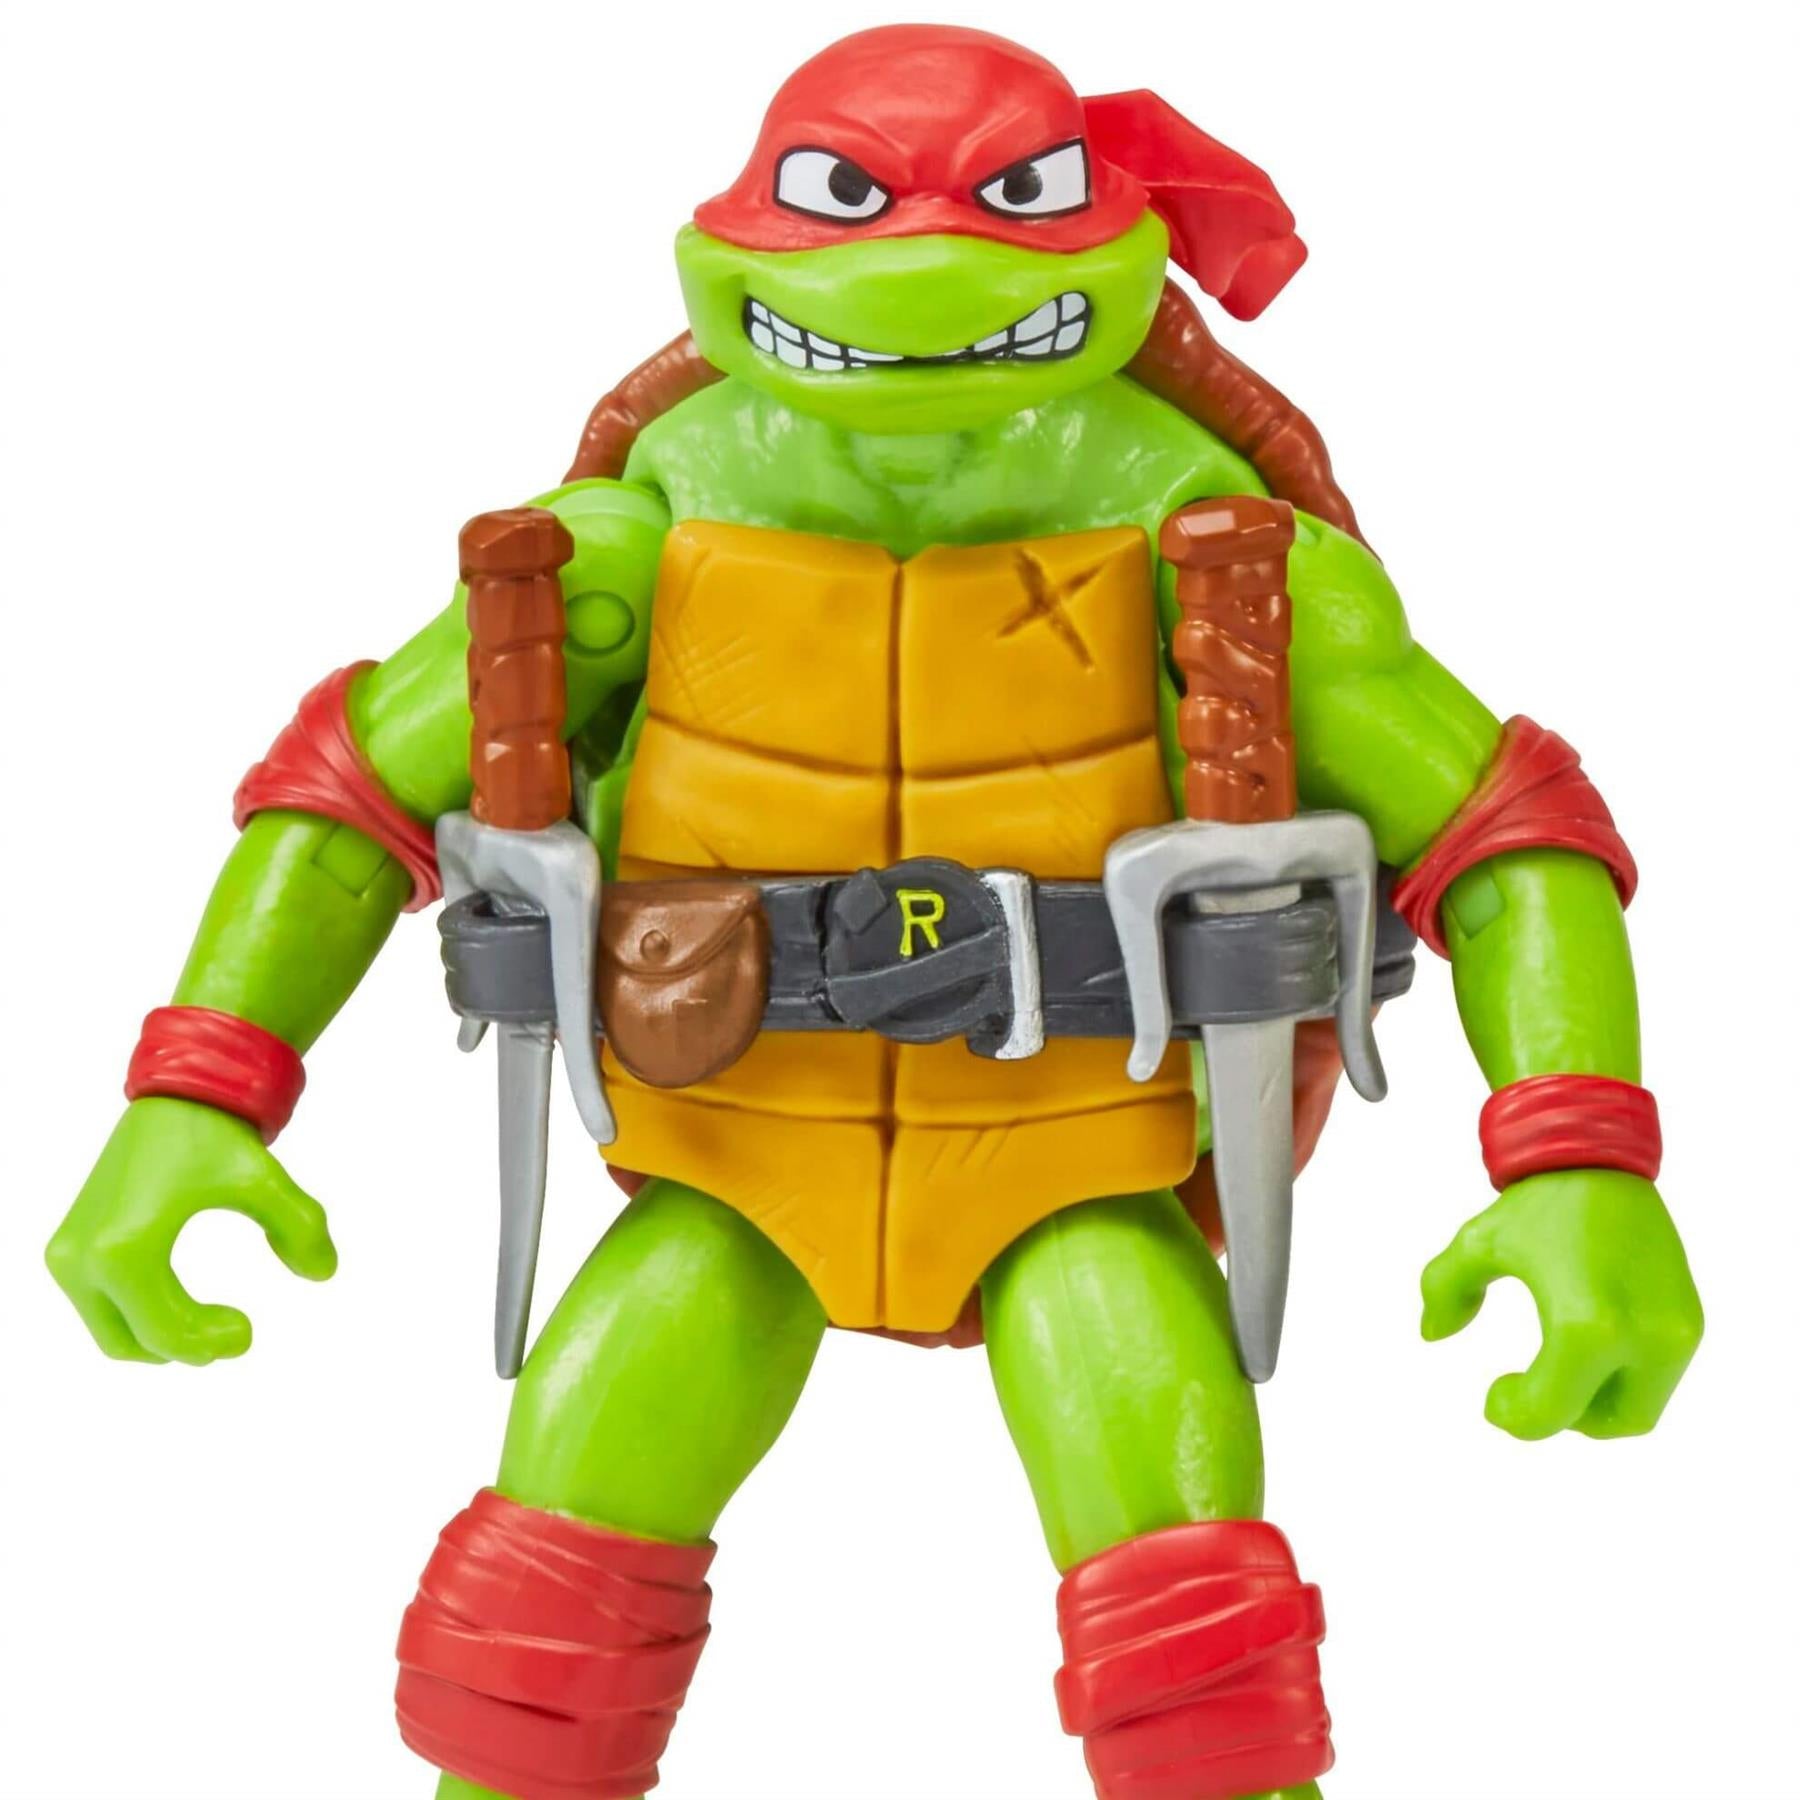 Teenage Mutant Ninja Turtles Movie Basic Figure - Raphael